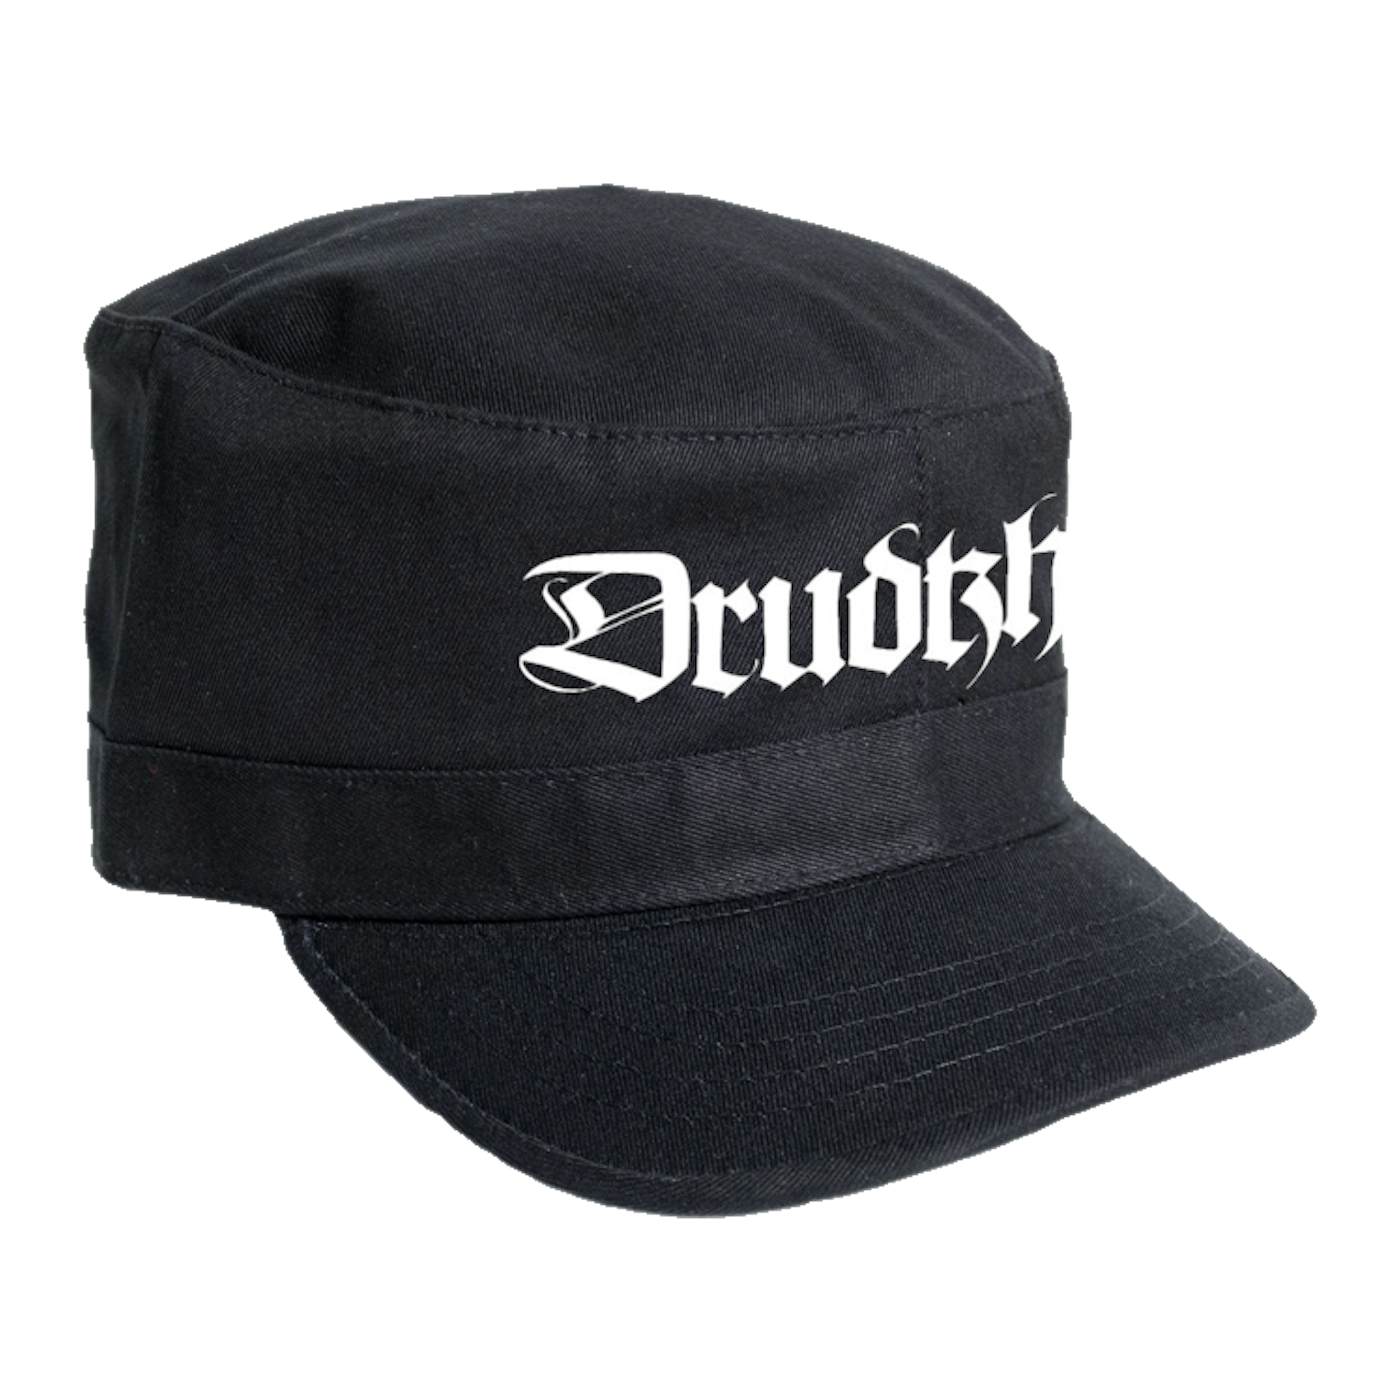 DRUDKH - 'Logo' Army Cap